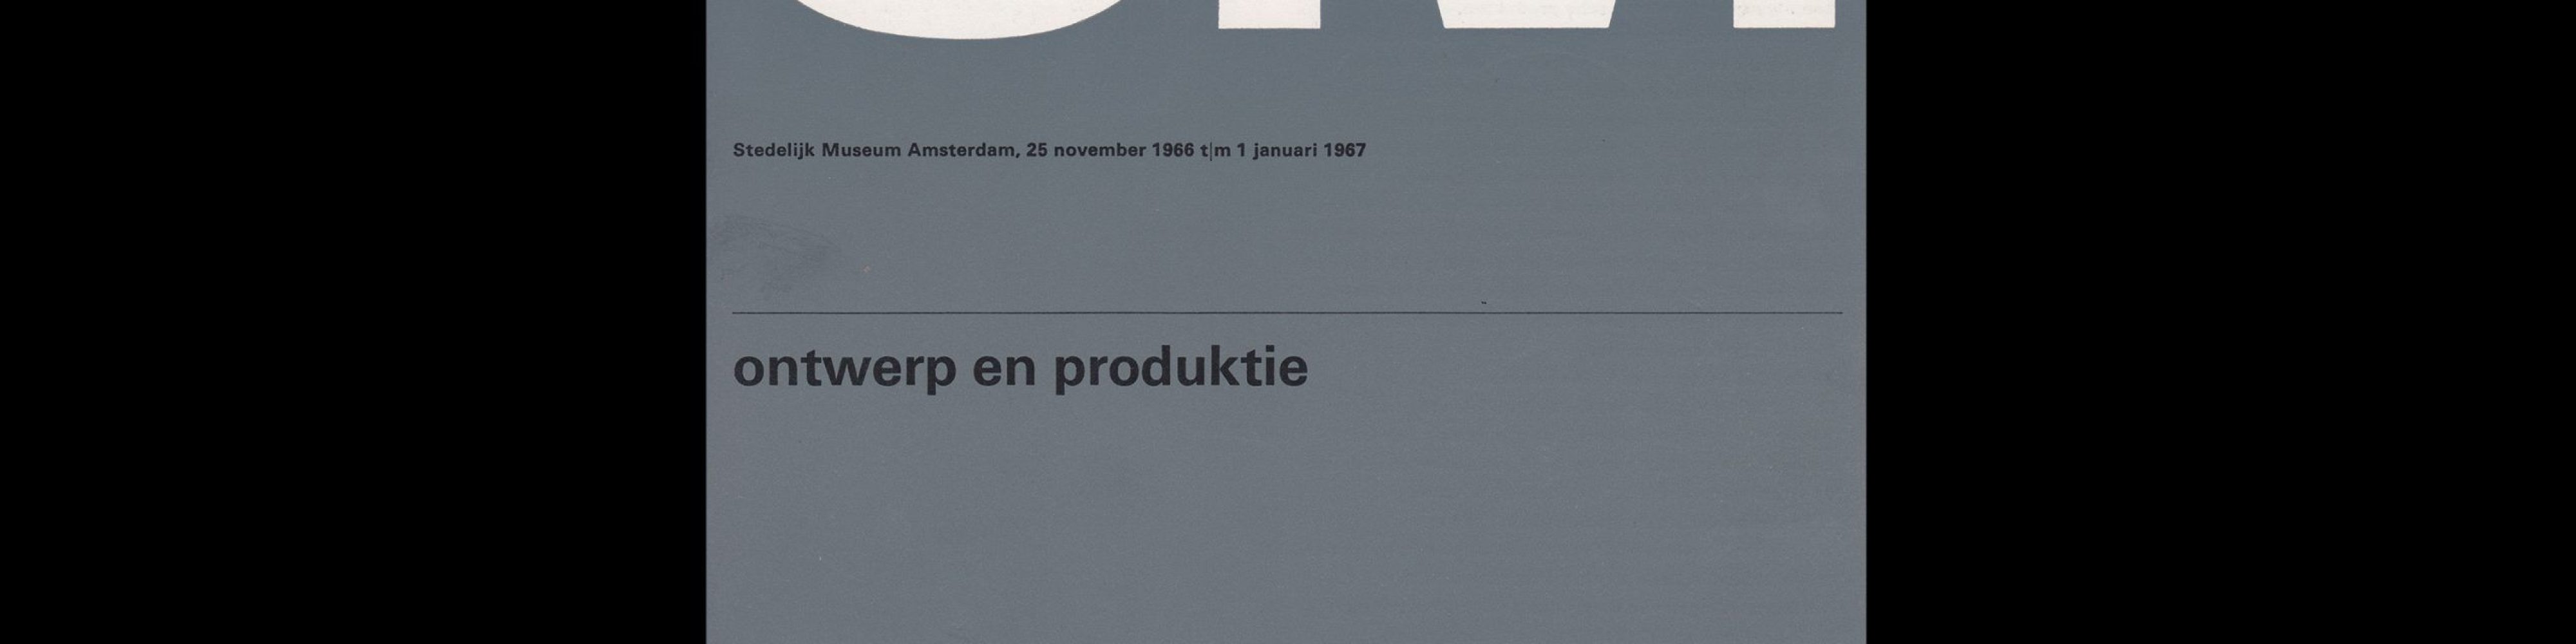 Ontwerp en Produktie, Stedelijk Museum, Amsterdam, 1966 designed by Wim Crouwel (Total Design)